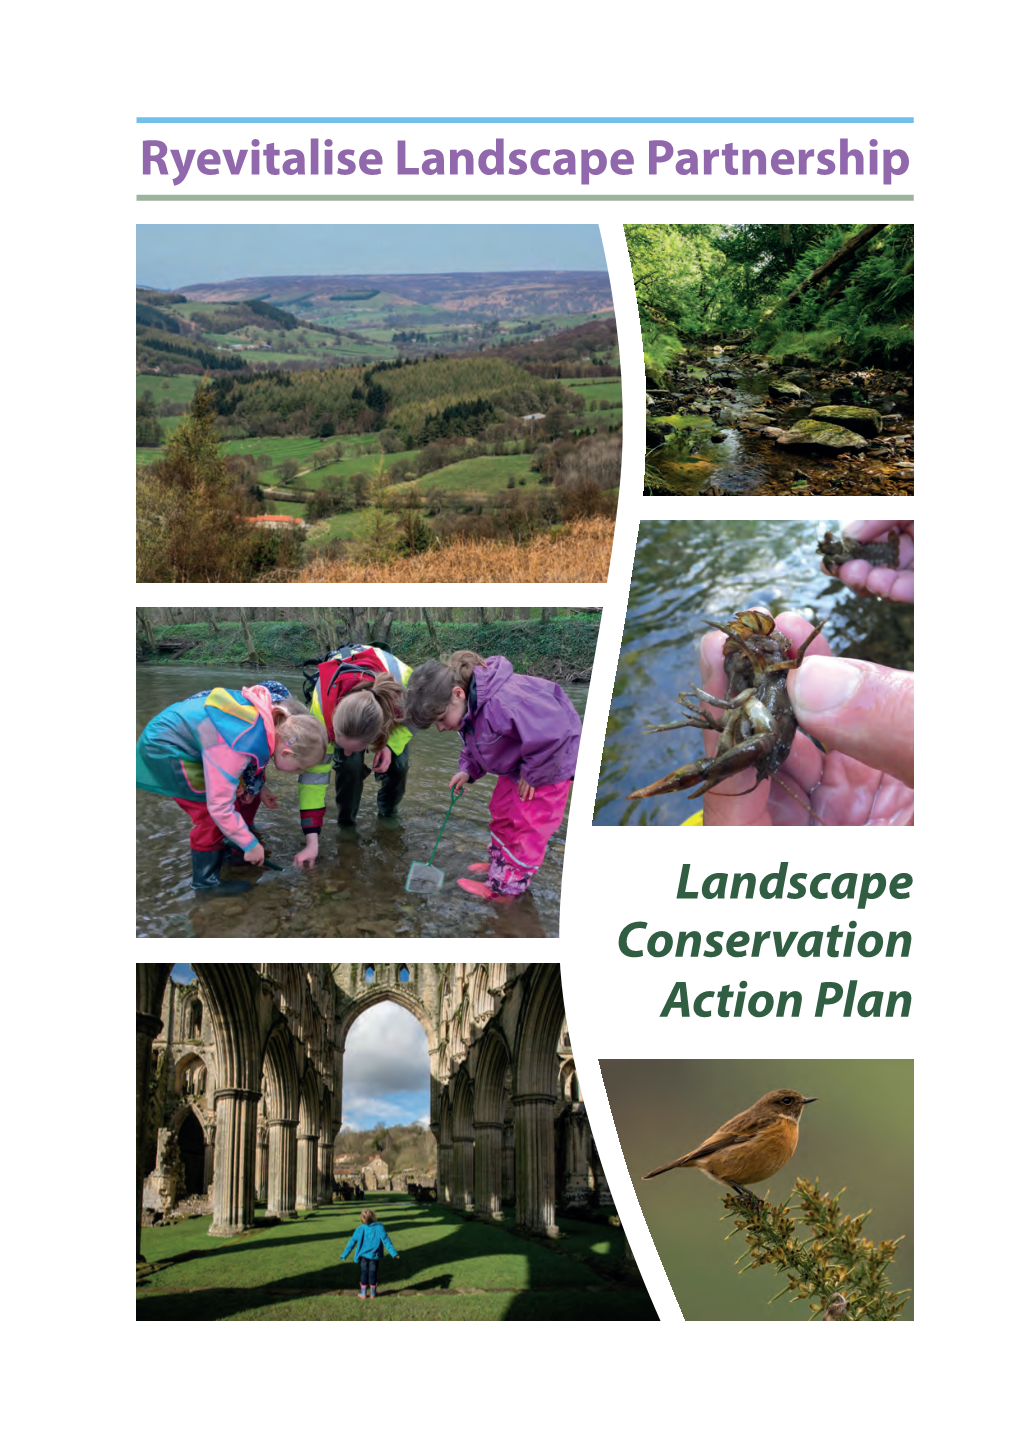 Landscape Conservation Action Plan